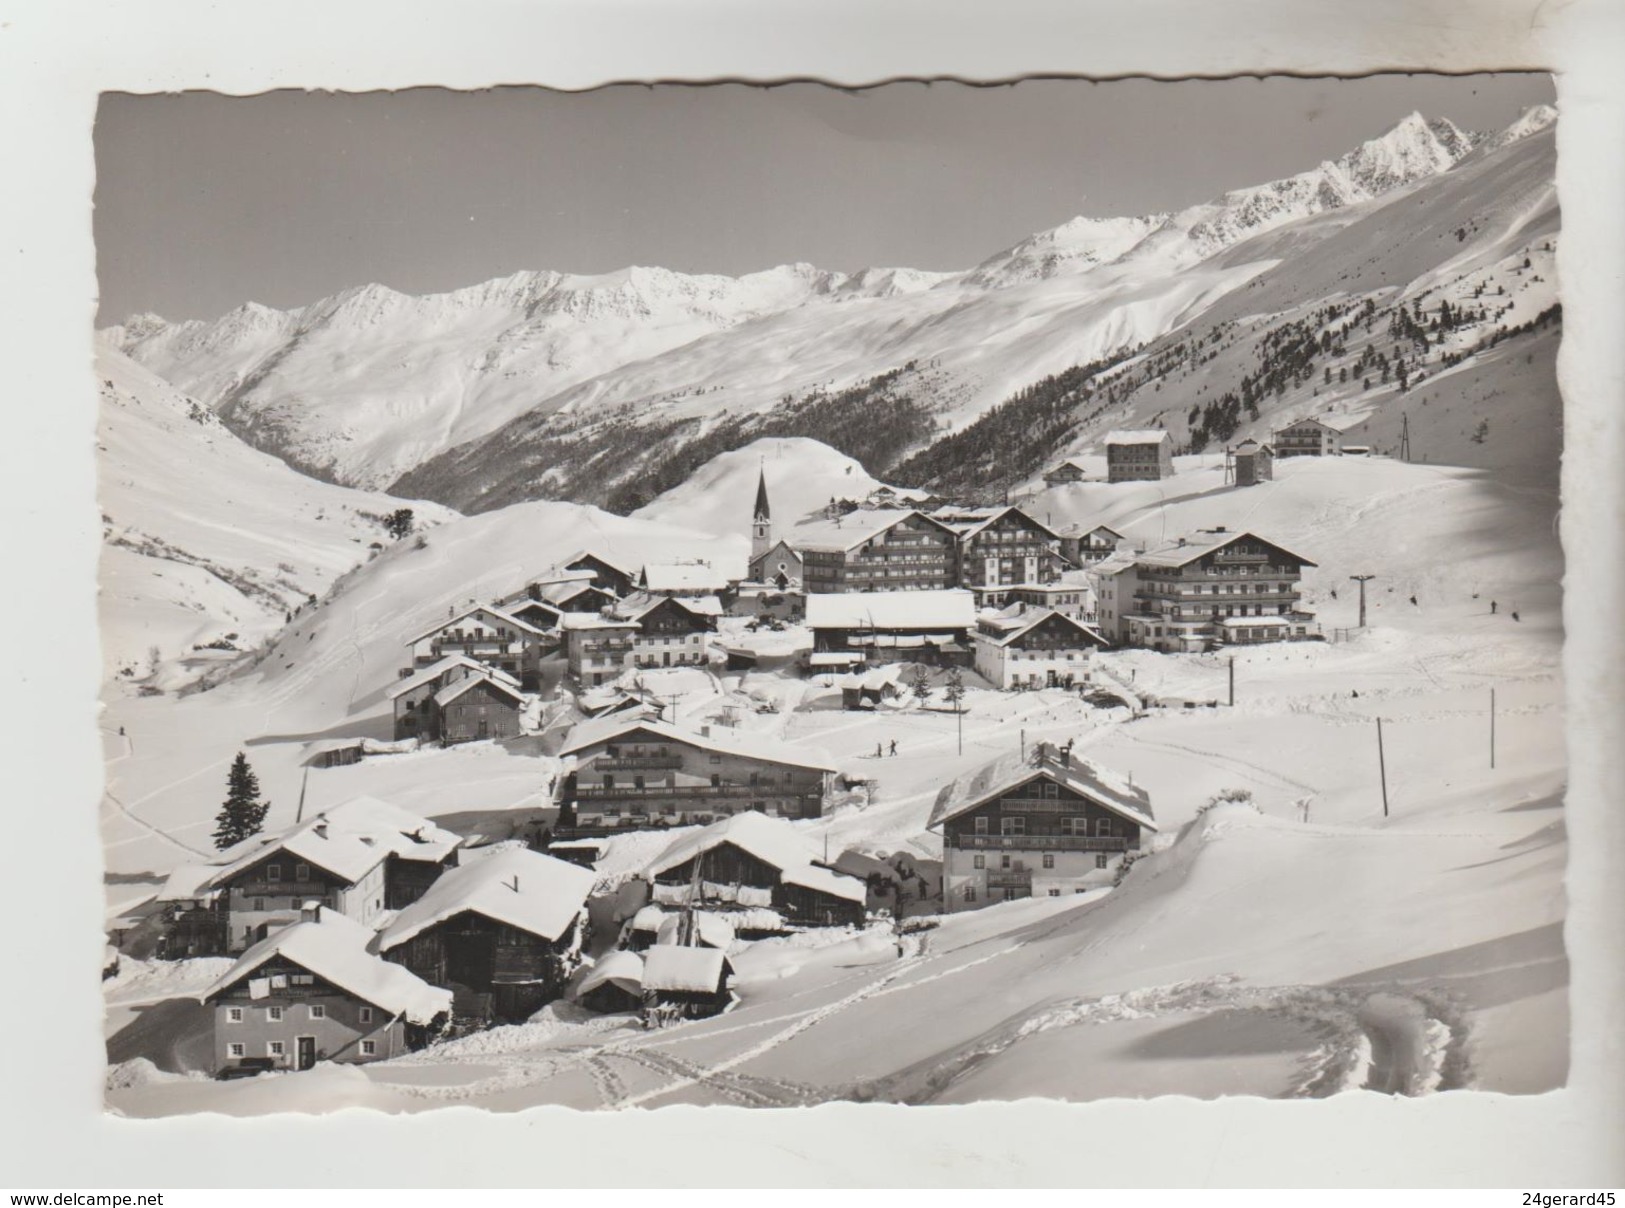 CPSM SOLDEN (Autriche-Tyrol) - GURGL 1930 M Das Ski U. Sonnenparadis - Sölden